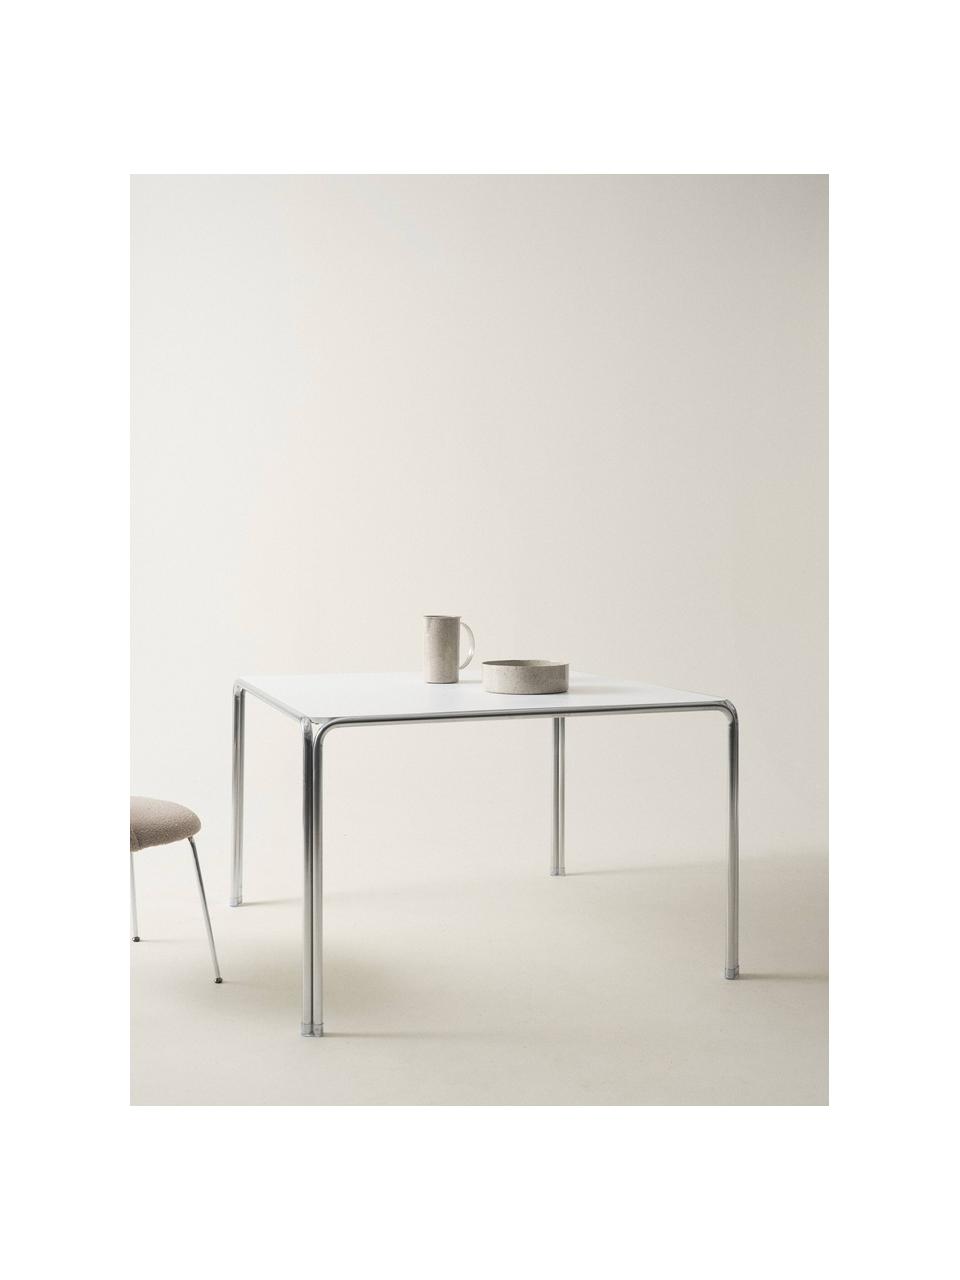 Table Dayton, 120 x 120 cm, Blanc cassé, argenté, larg. 120 x prof. 120 cm